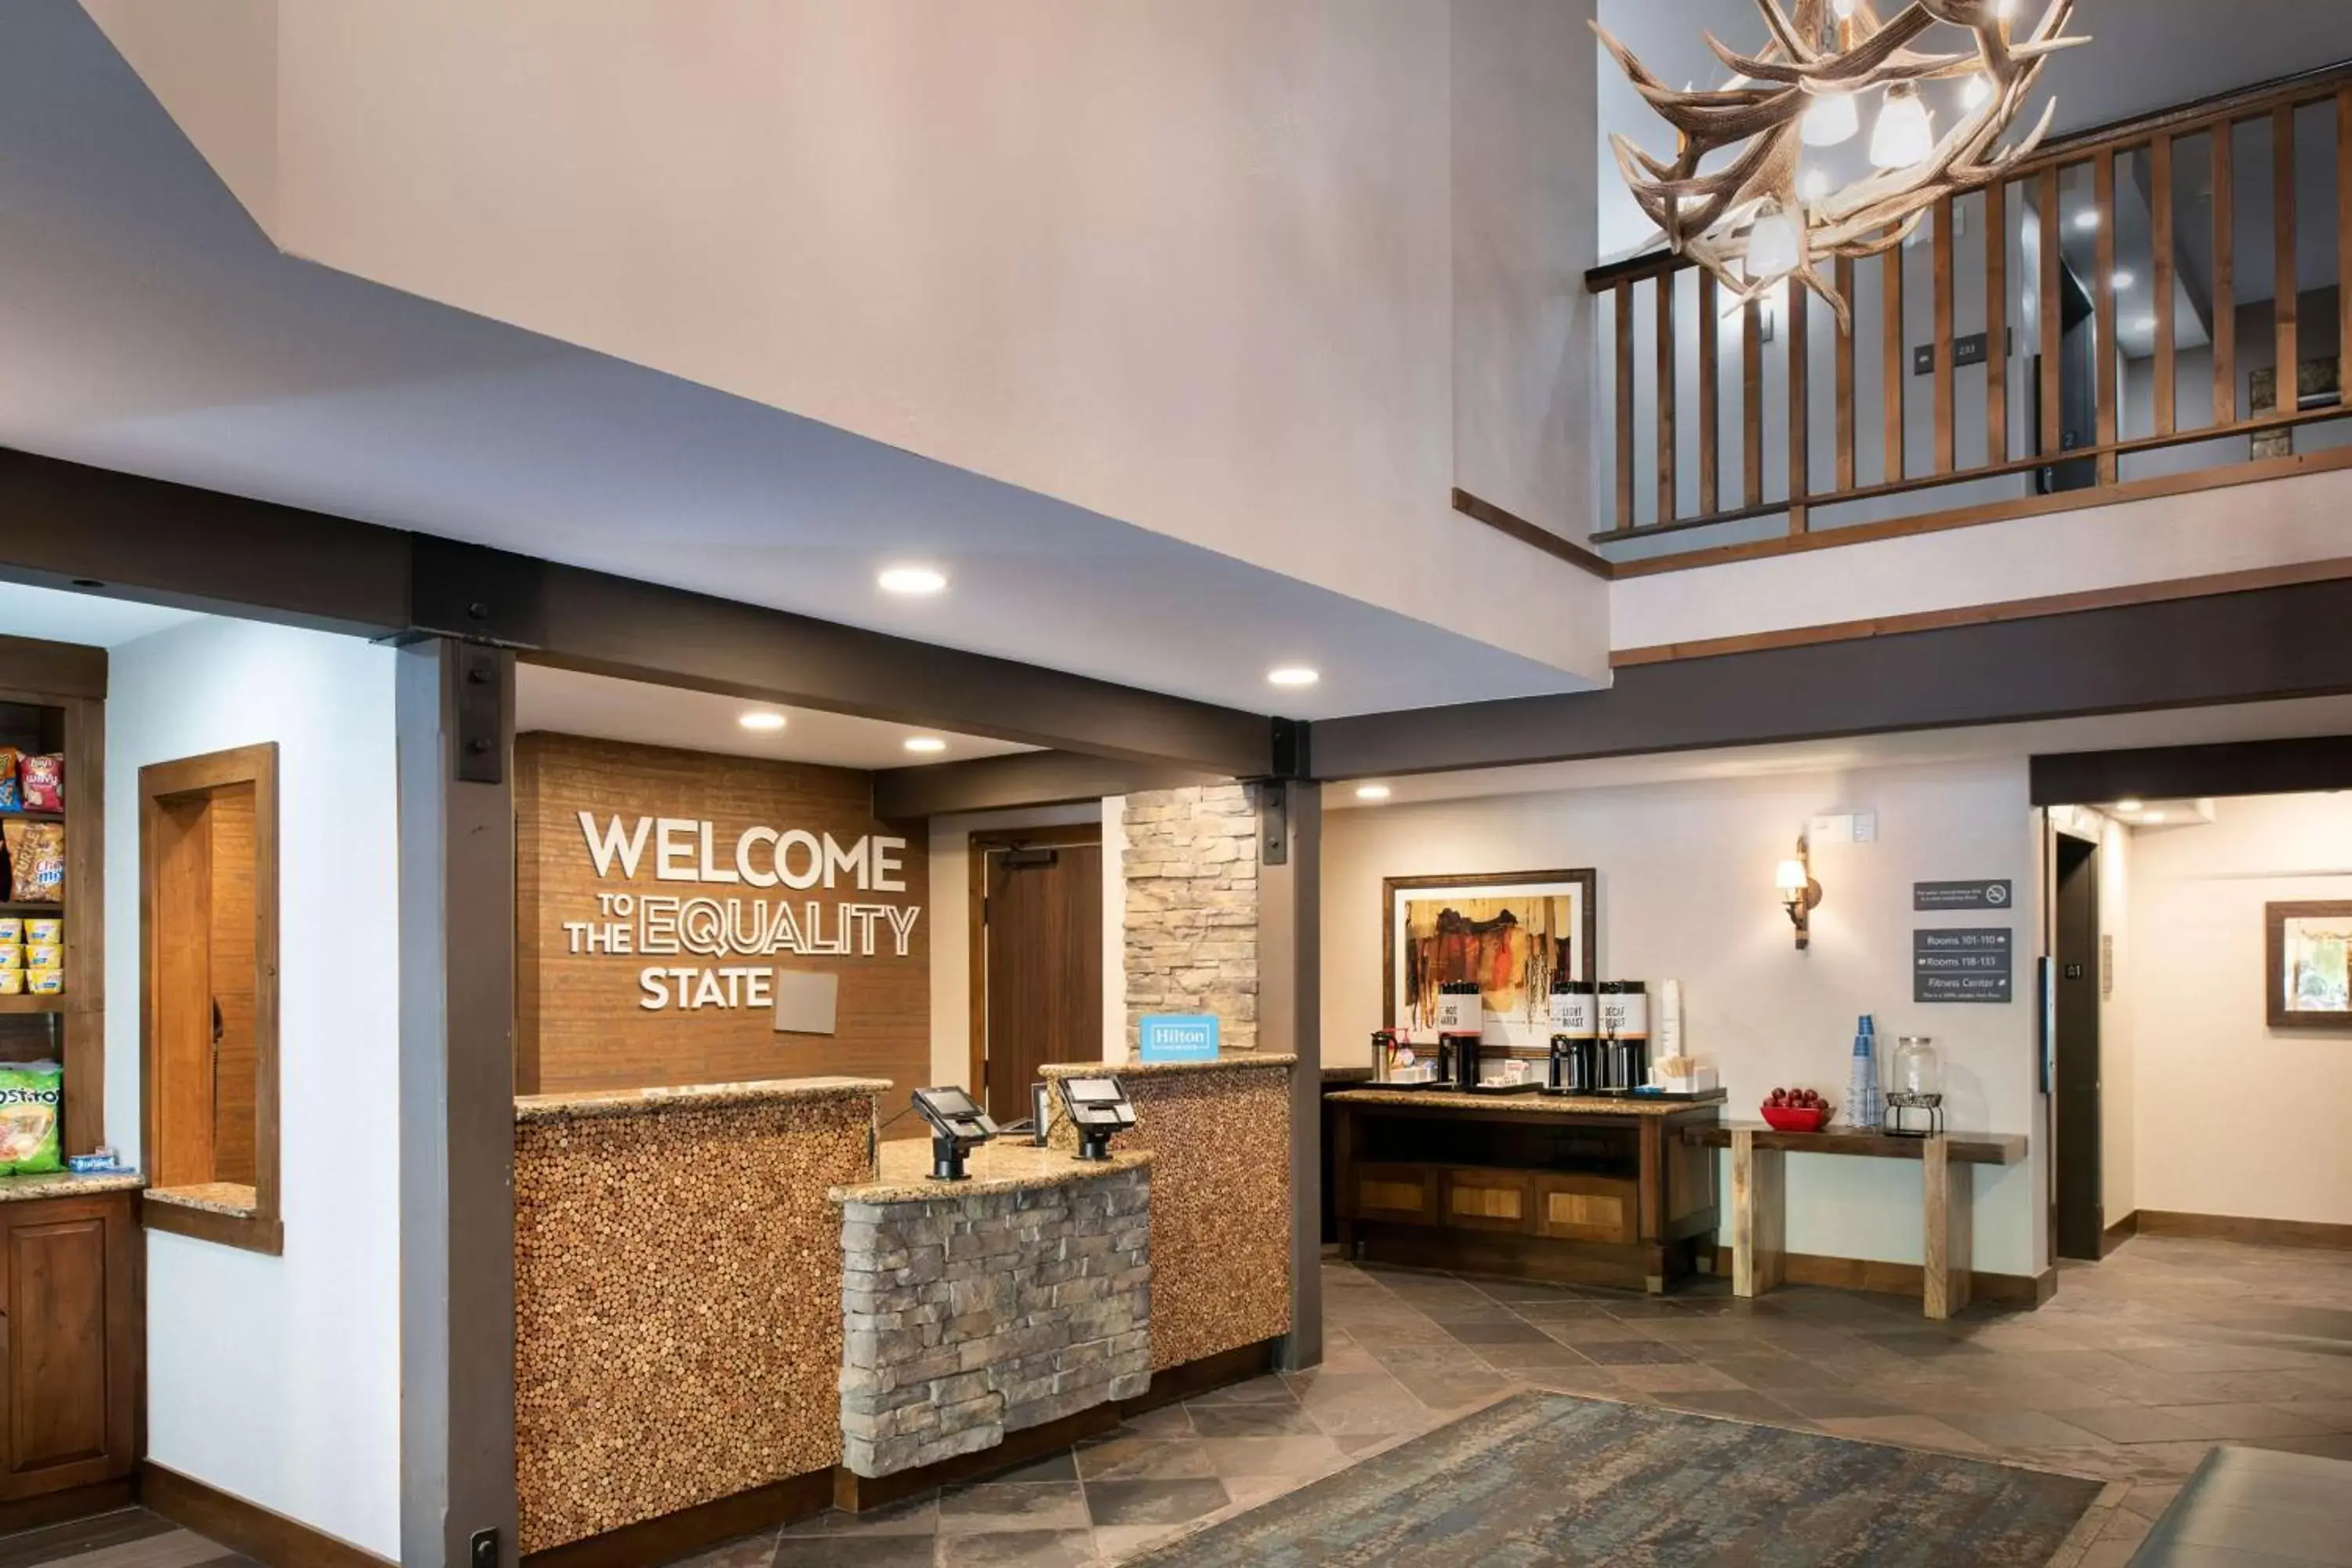 Lobby or reception in Hampton Inn Jackson Hole